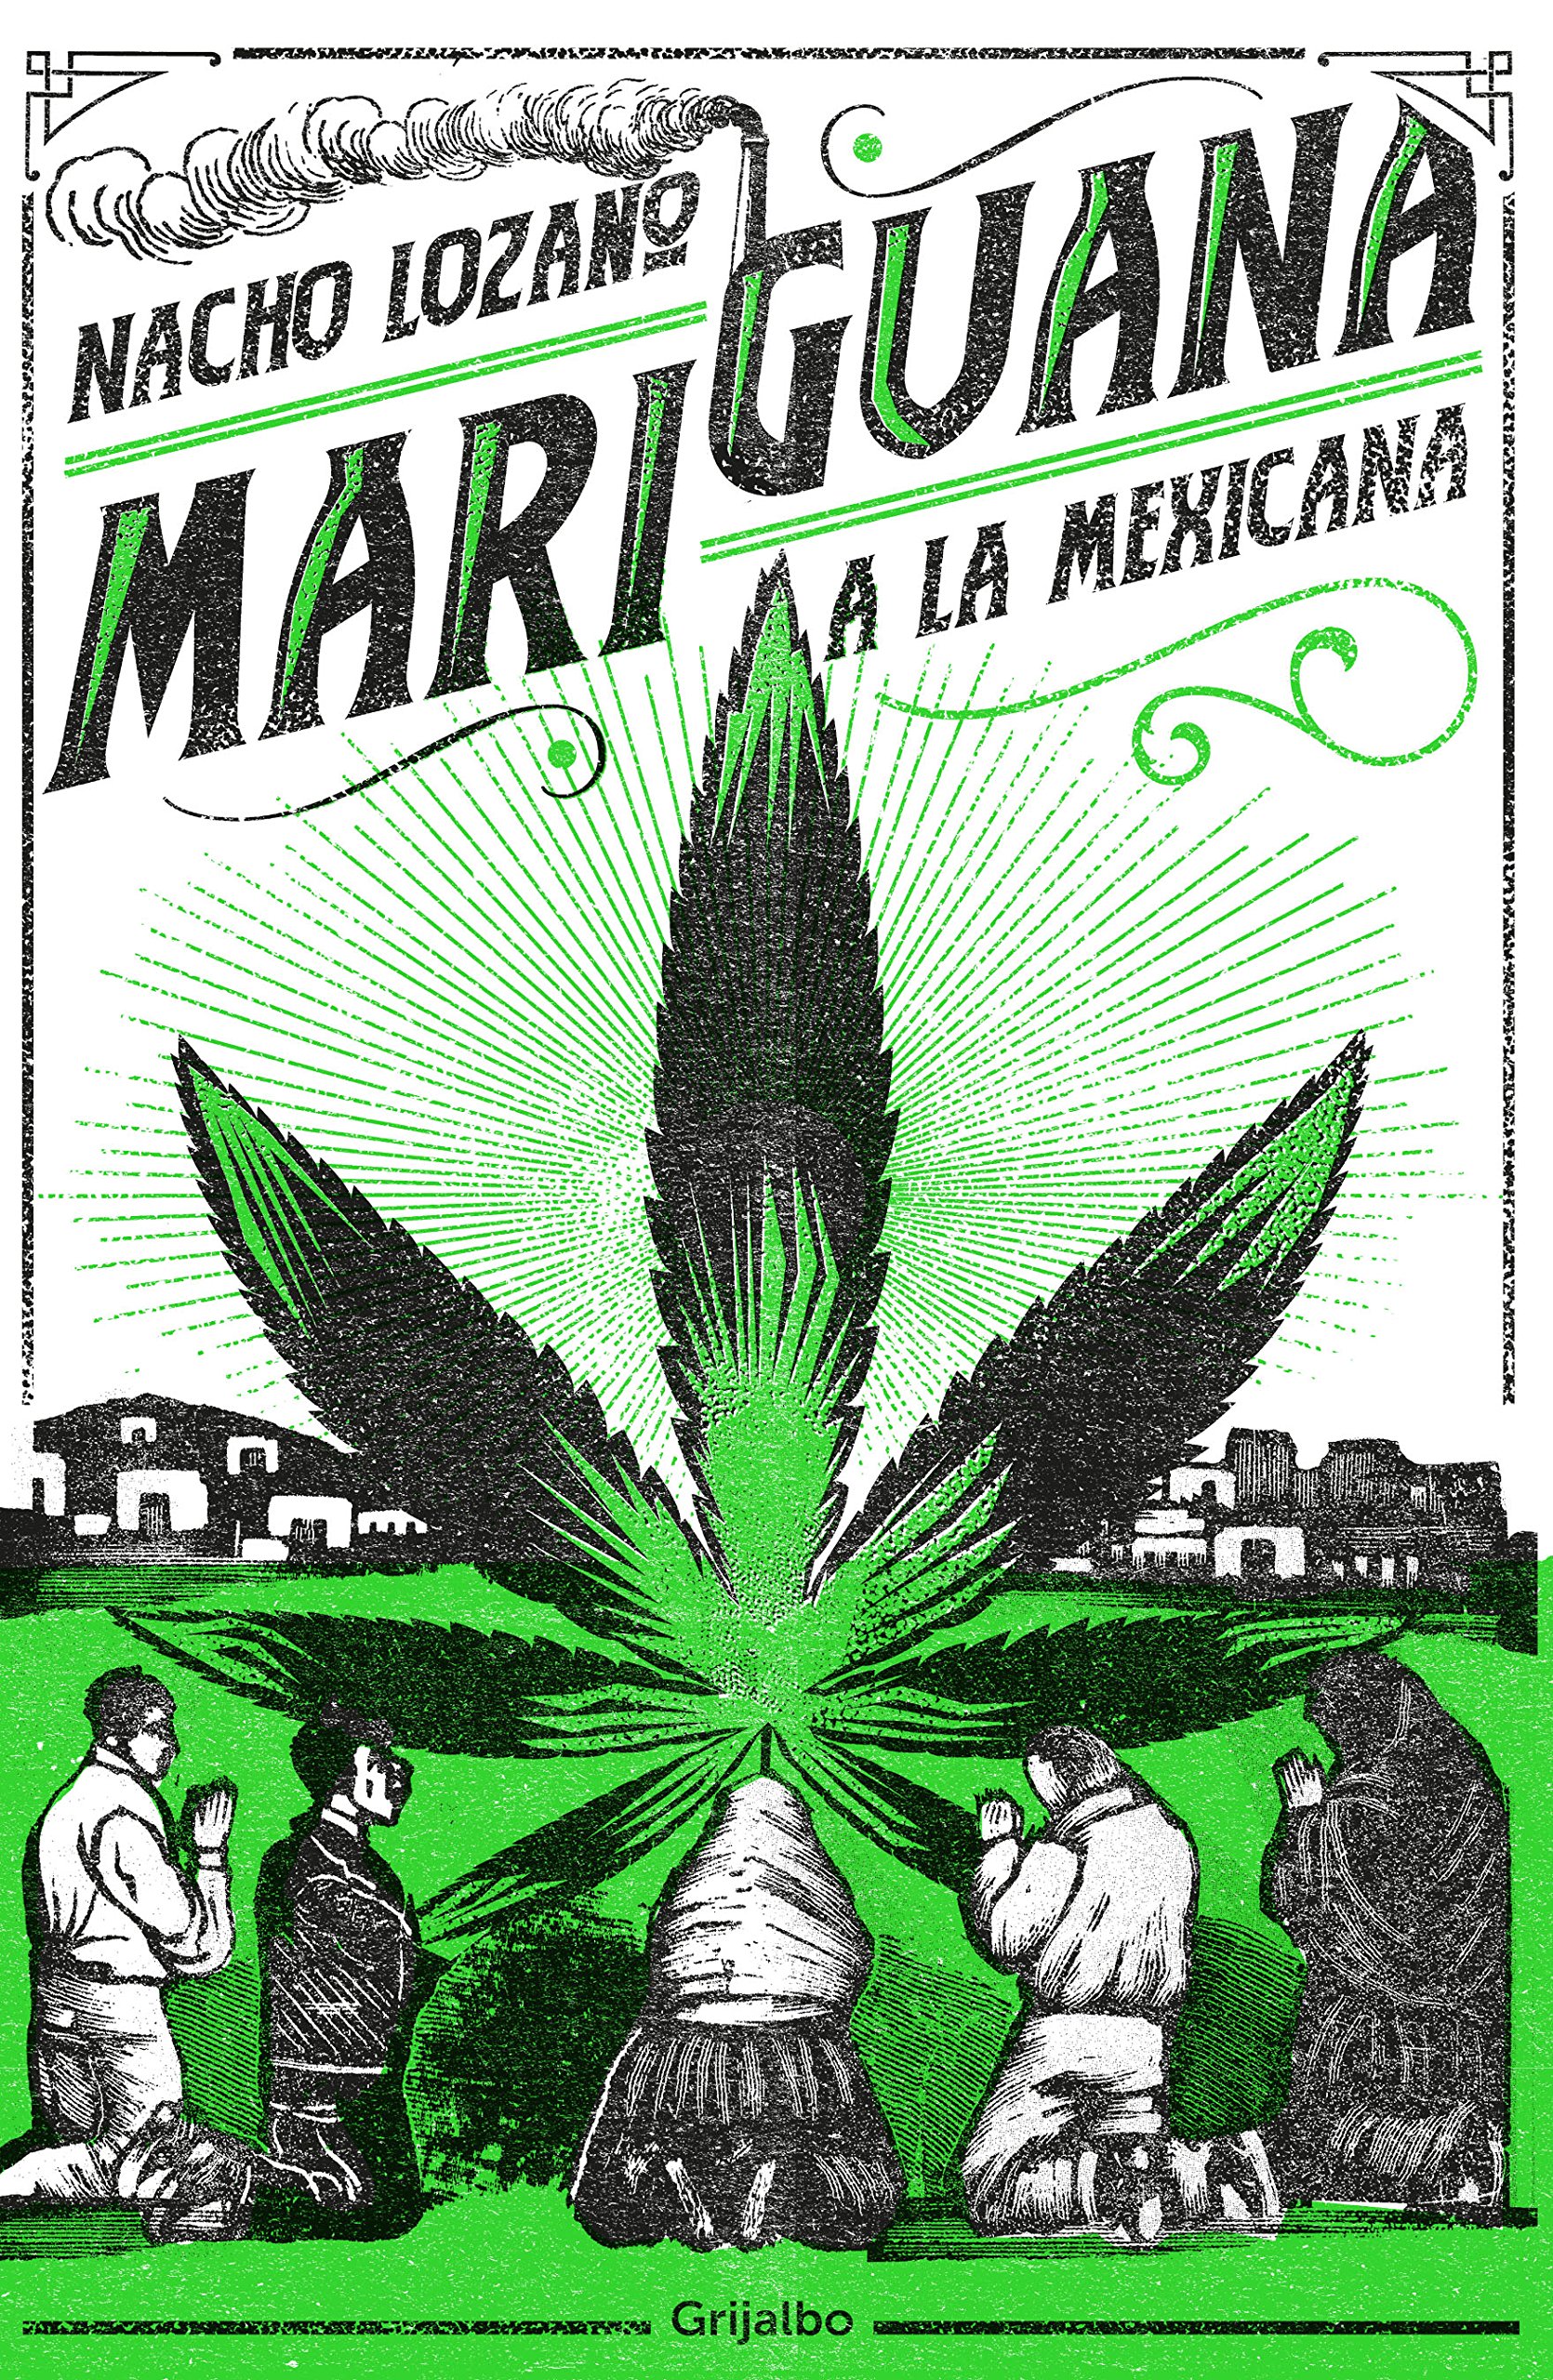 Legalización de la Marihuana, int1